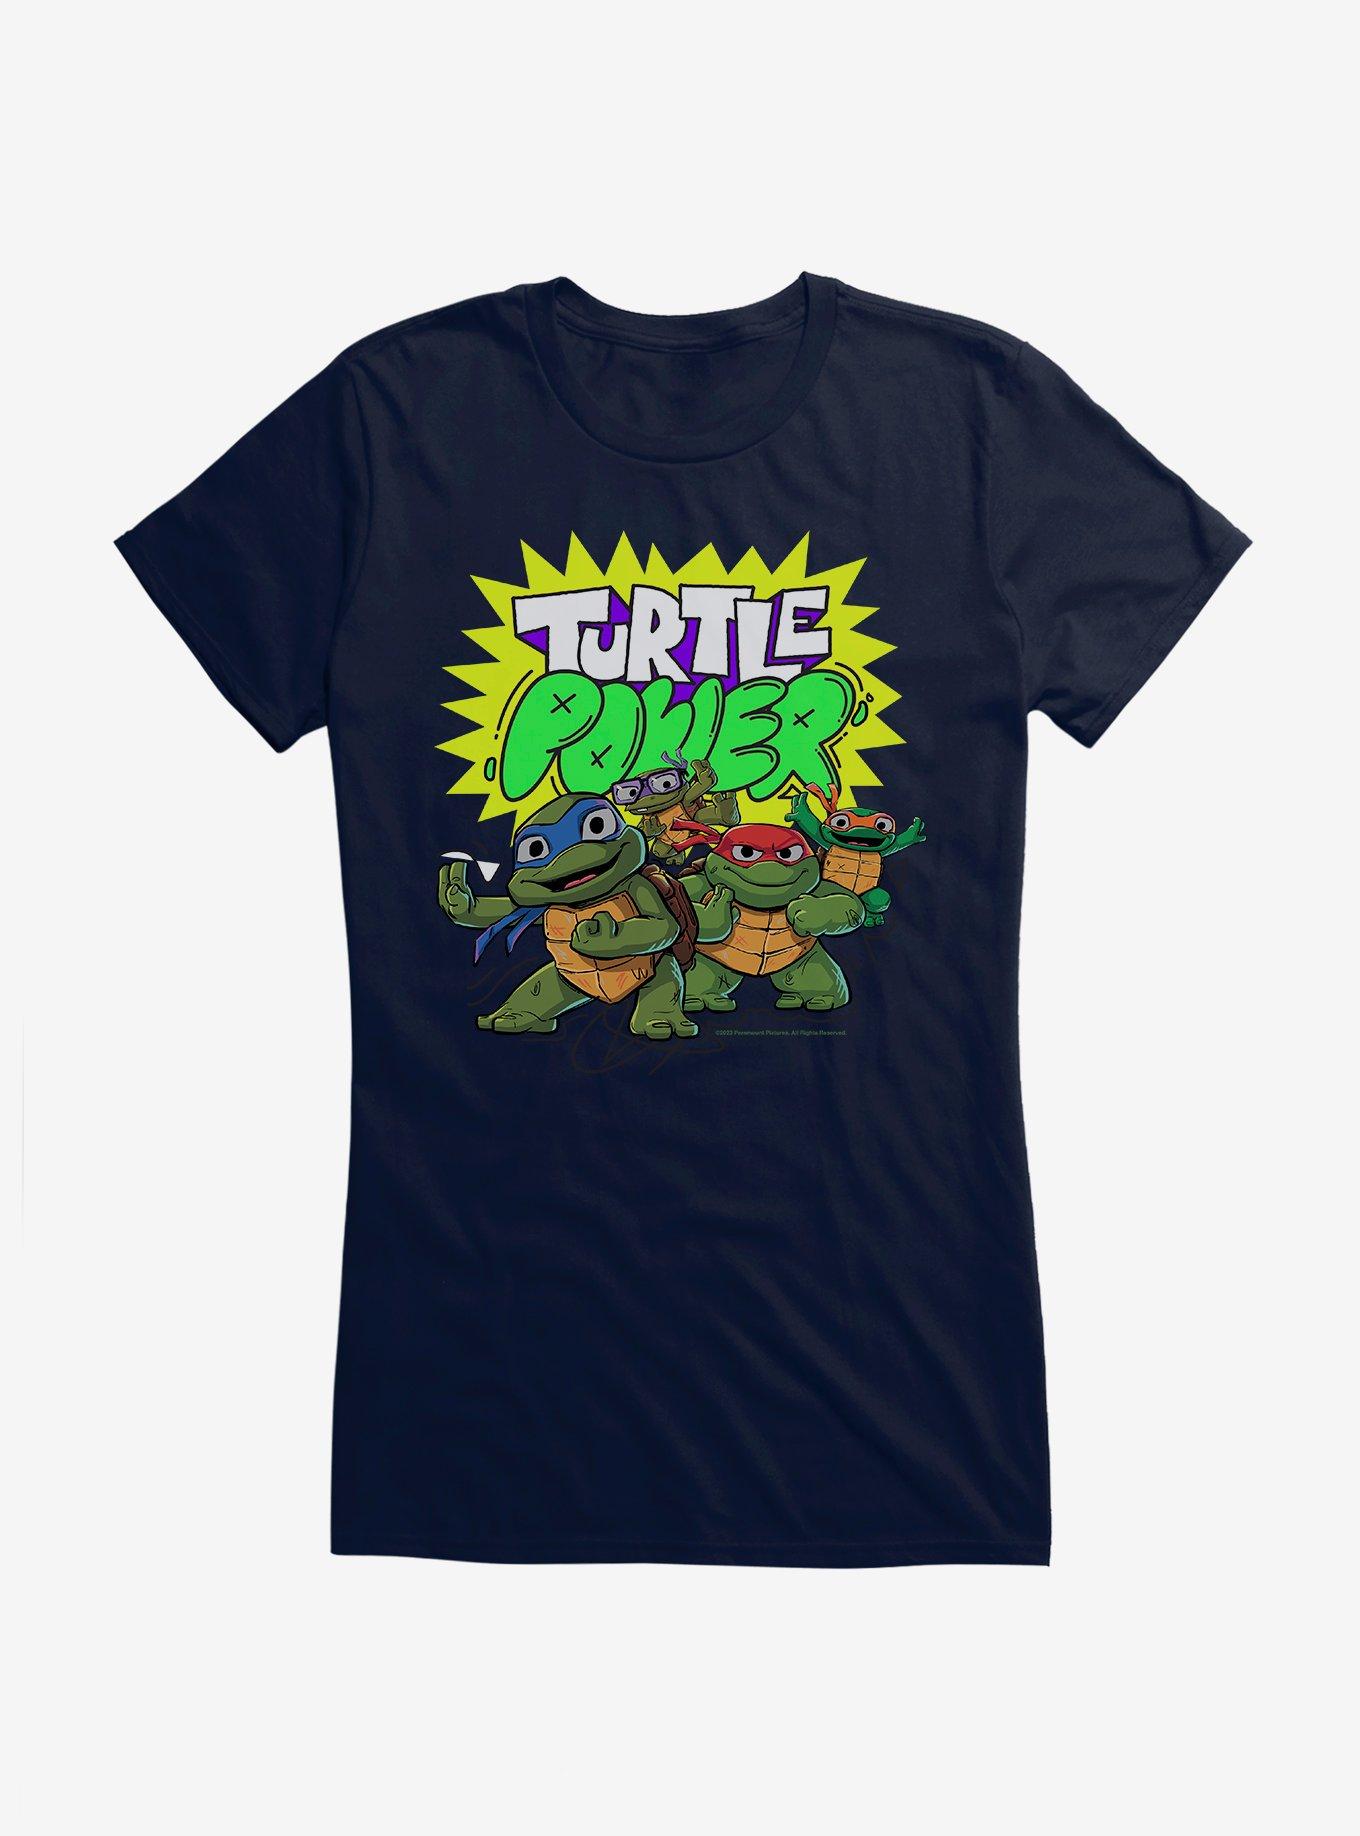  Teenage Mutant Ninja Turtles - Turtle Power - Girls